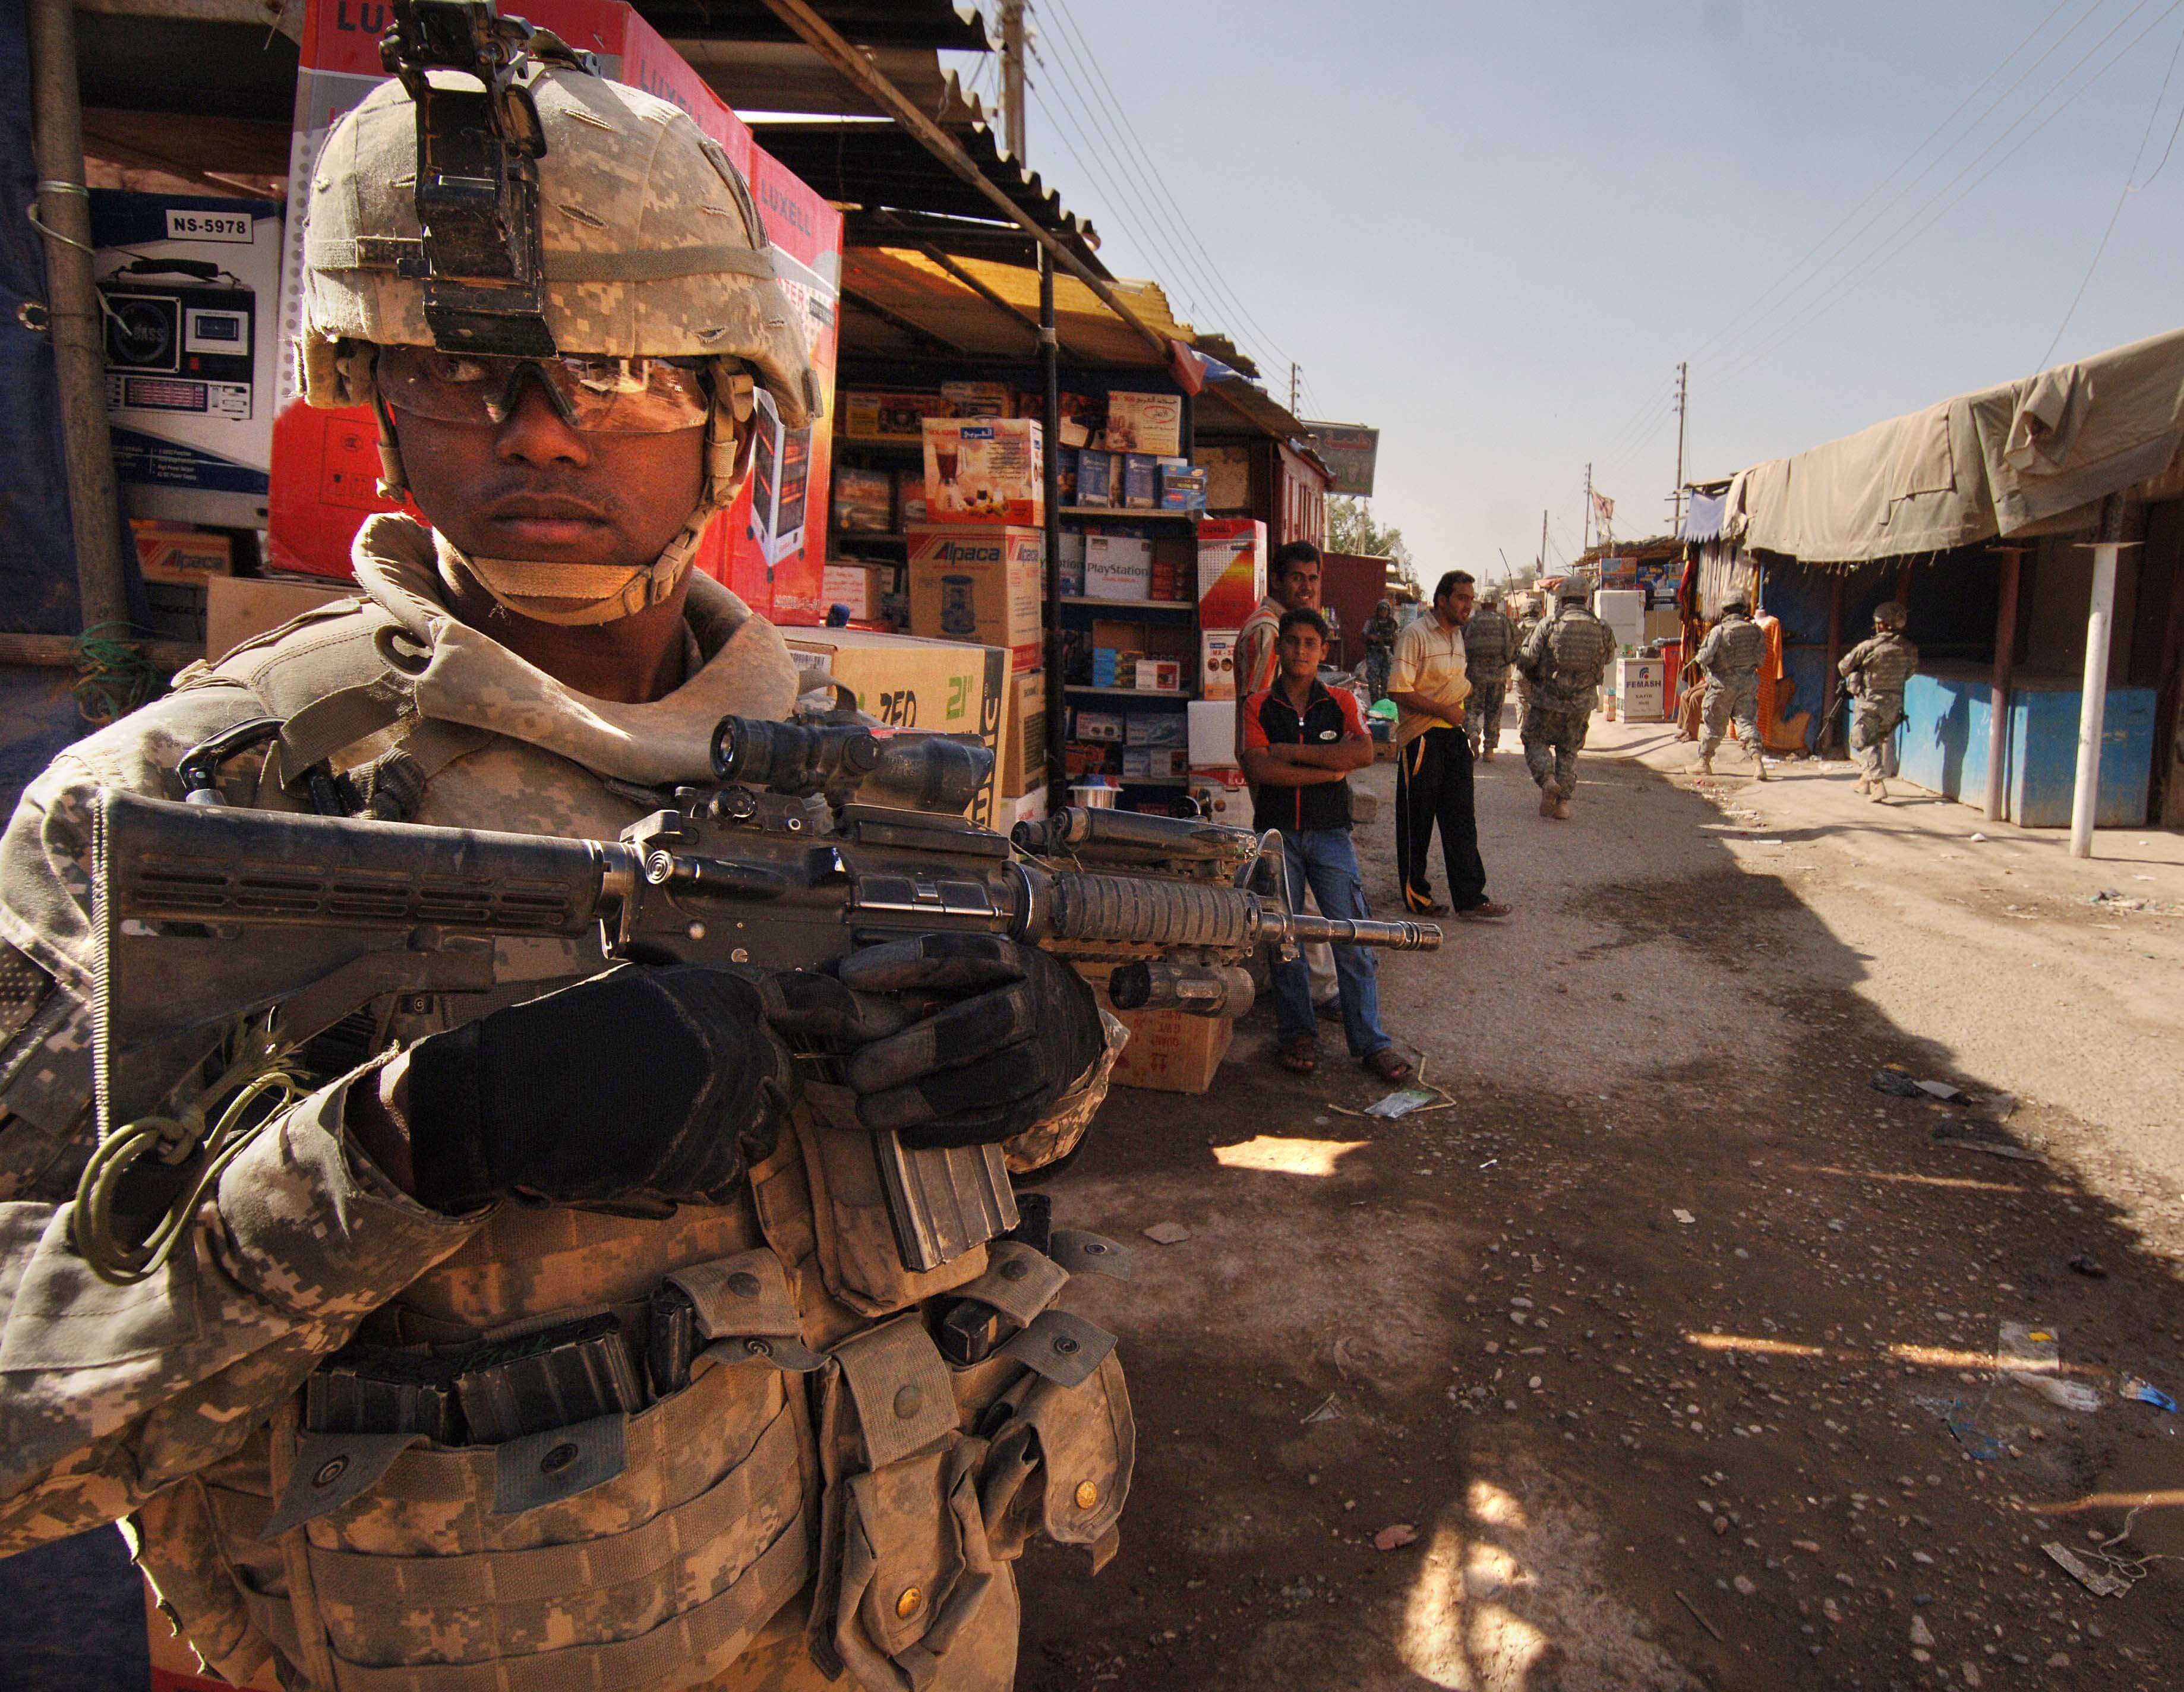 Amerikaanse soldaat in het Iraakse Narhwan, november 2007. © Flickr / The U.S. Army